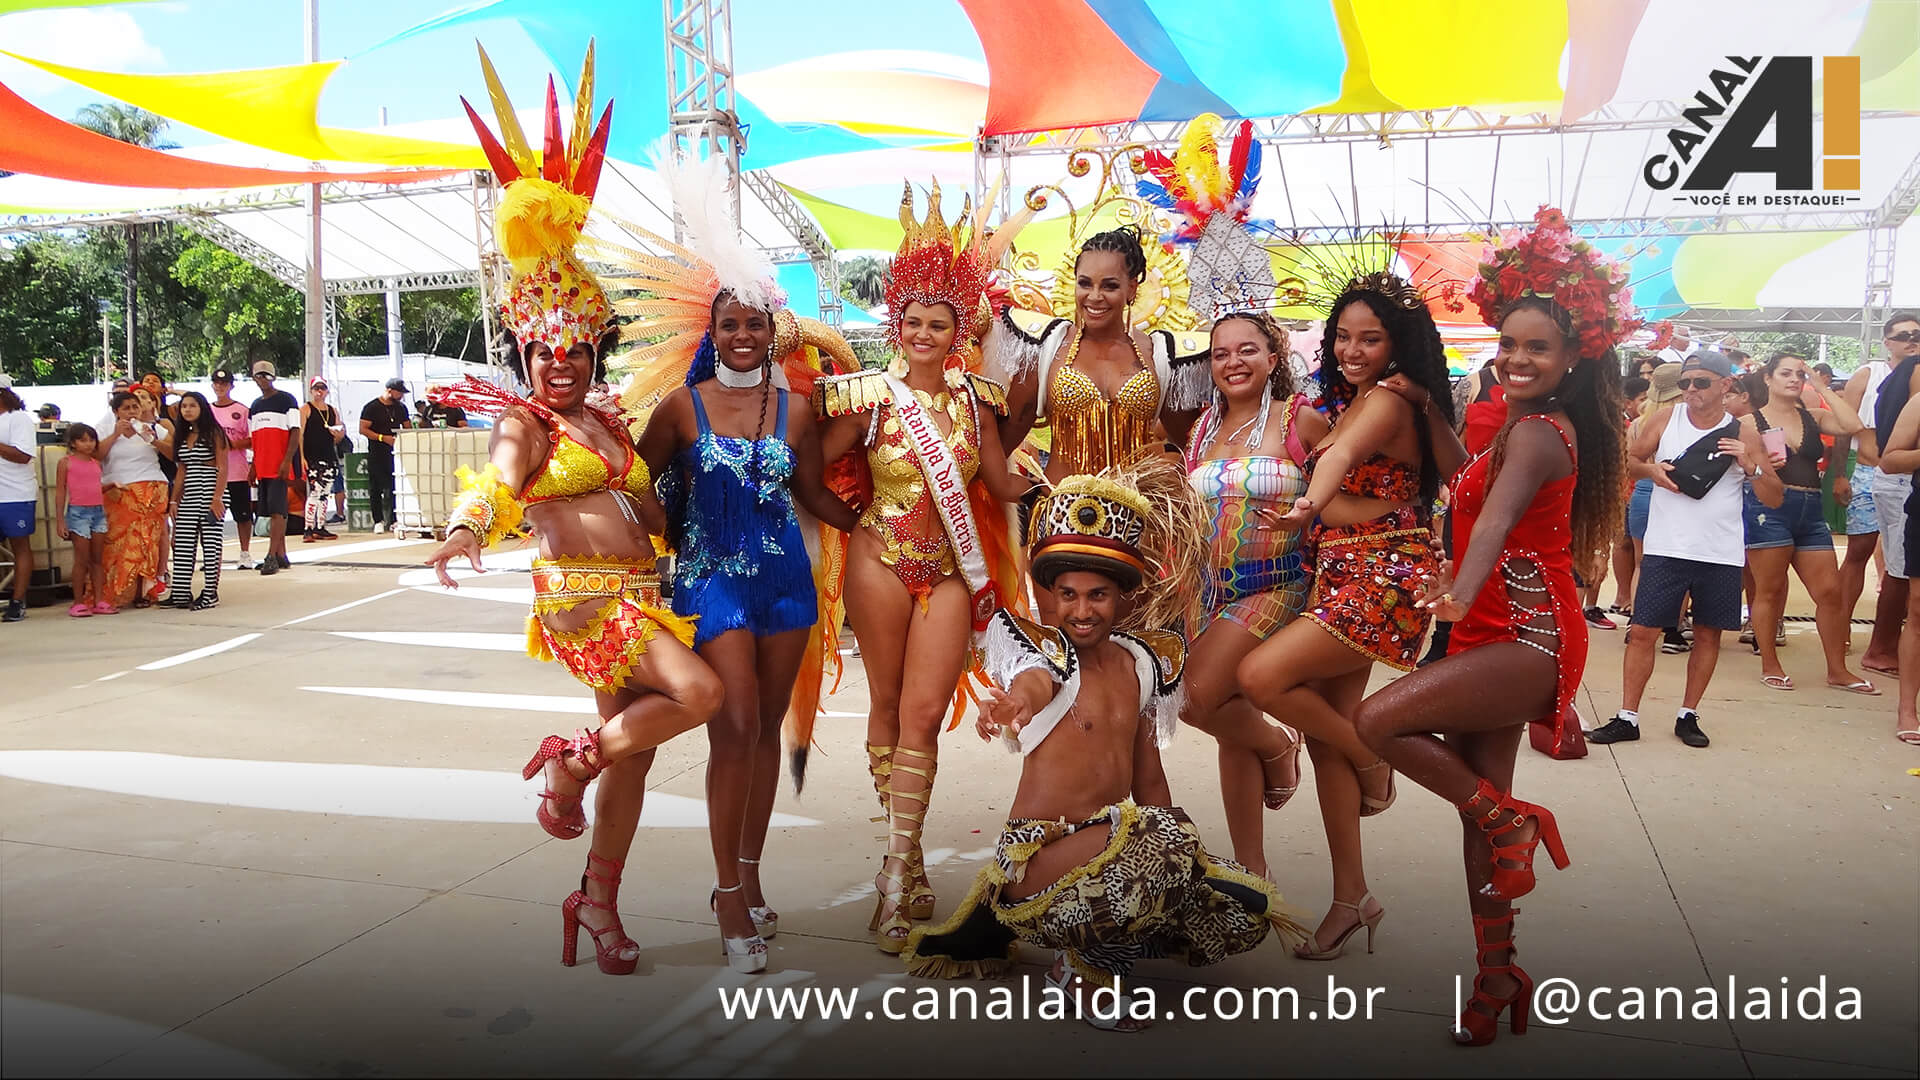 Carnaval em Lagoa Santa: Domingo de Folia com História e Ritmo Contagiante!